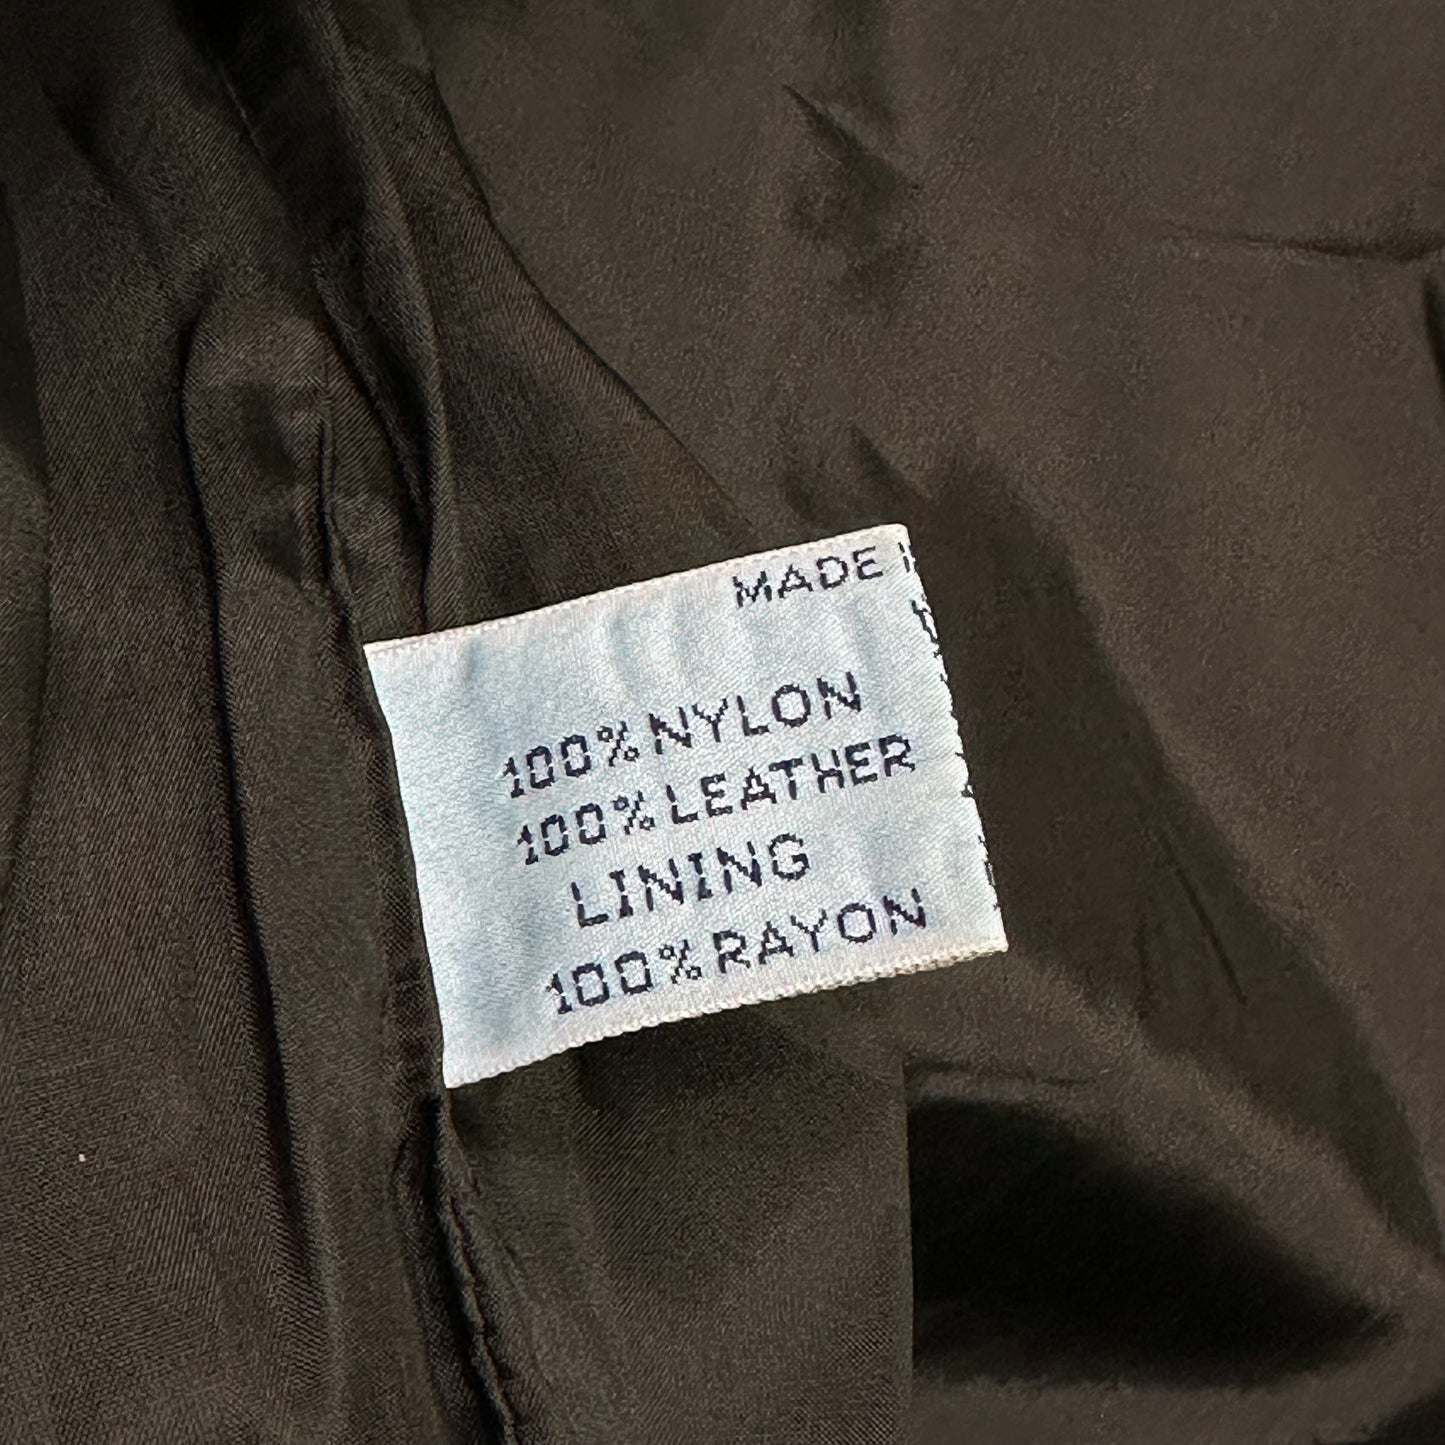 Prada Milano 90’s Leather & Nylon Jacket - 8-10